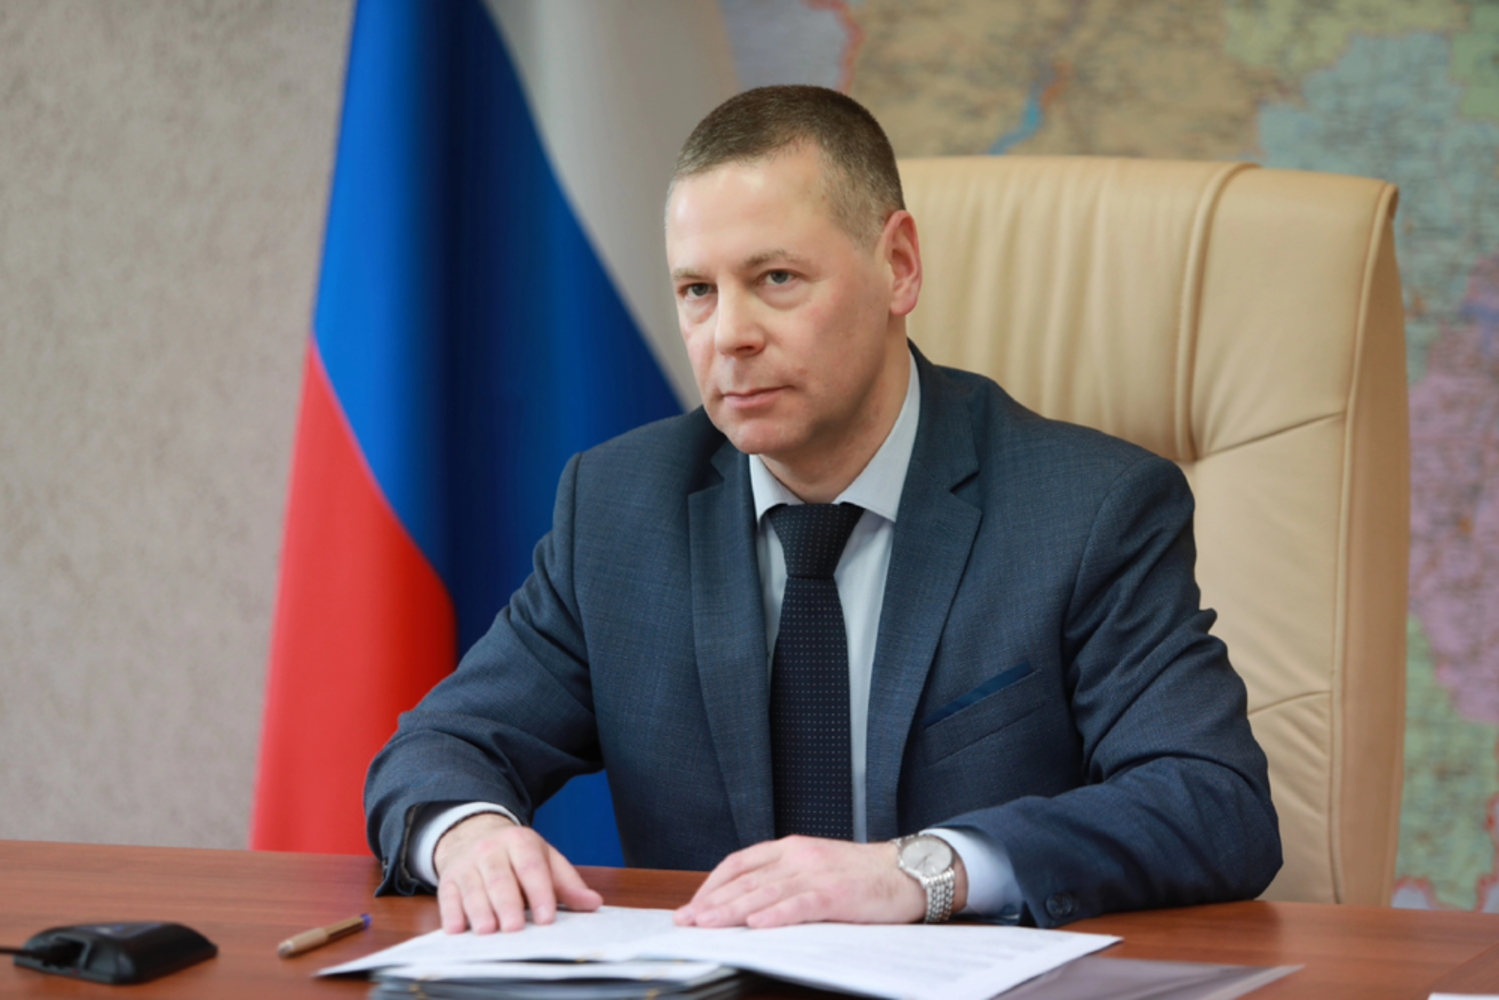 Ярославский губернатор заявил о готовности региона к медицинской реабилитации участников СВО